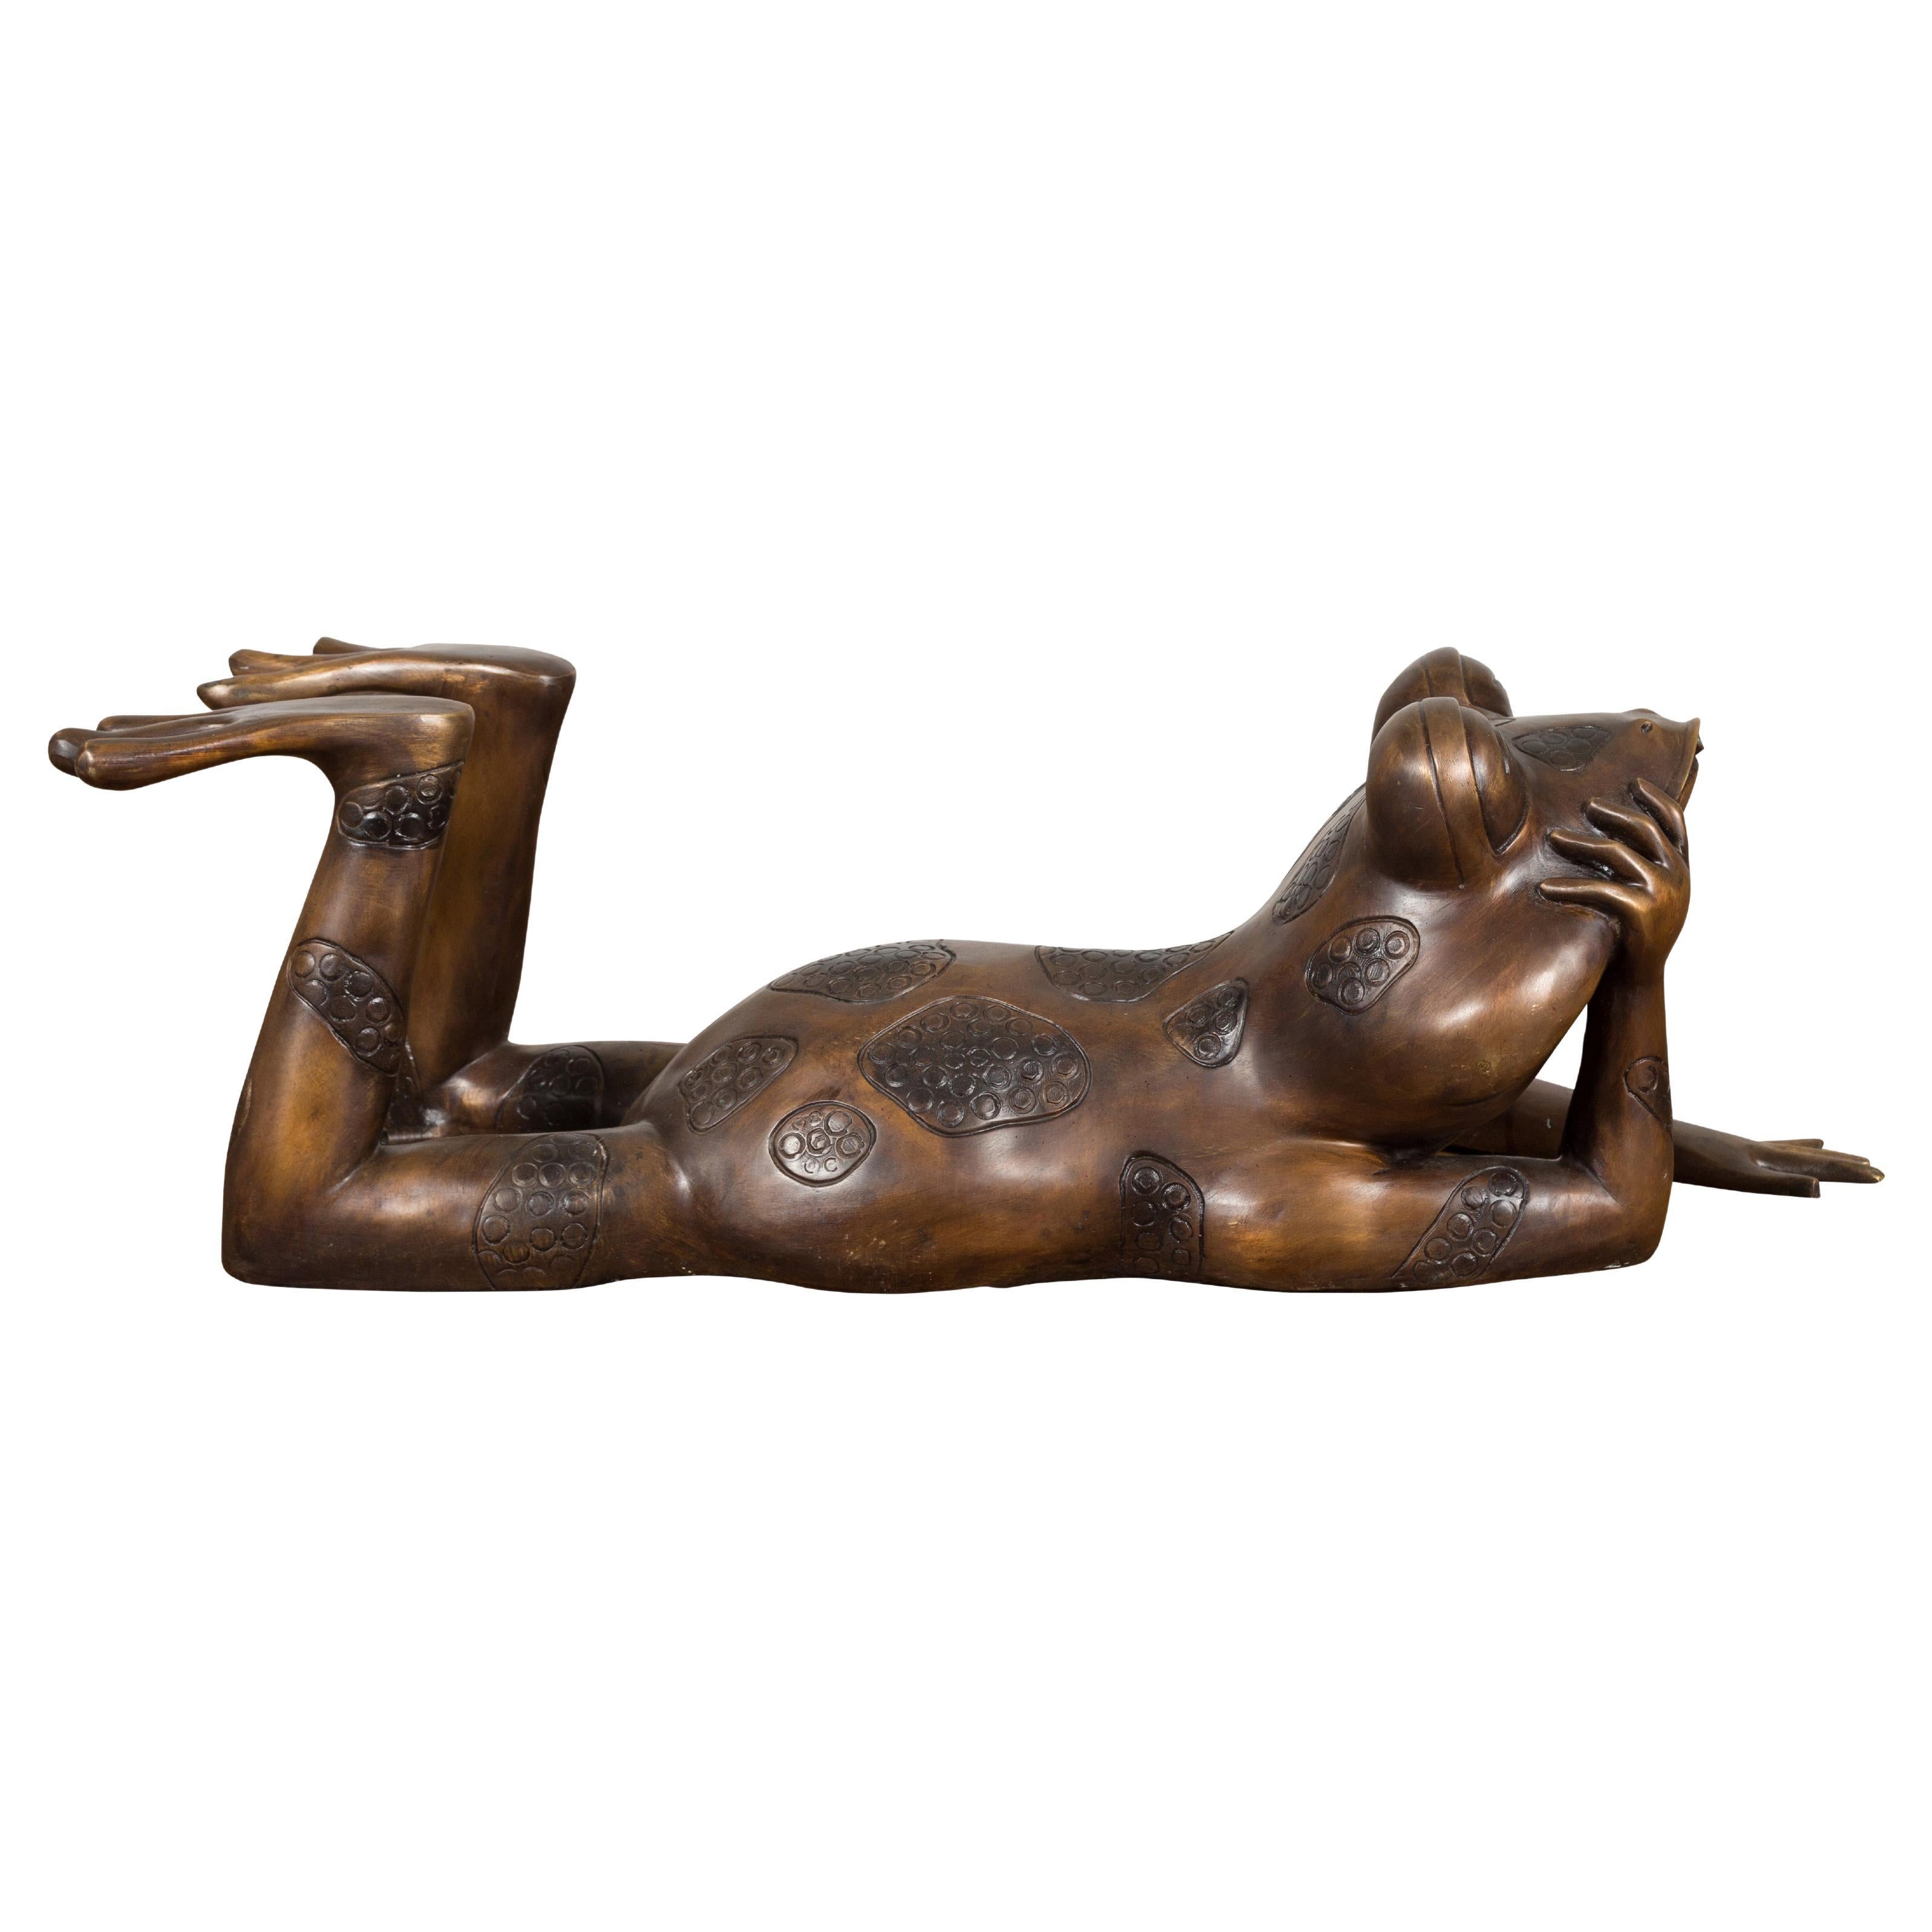 Grenouille rêveuse Sculpture en bronze à patine dorée, tubée comme une fontaine